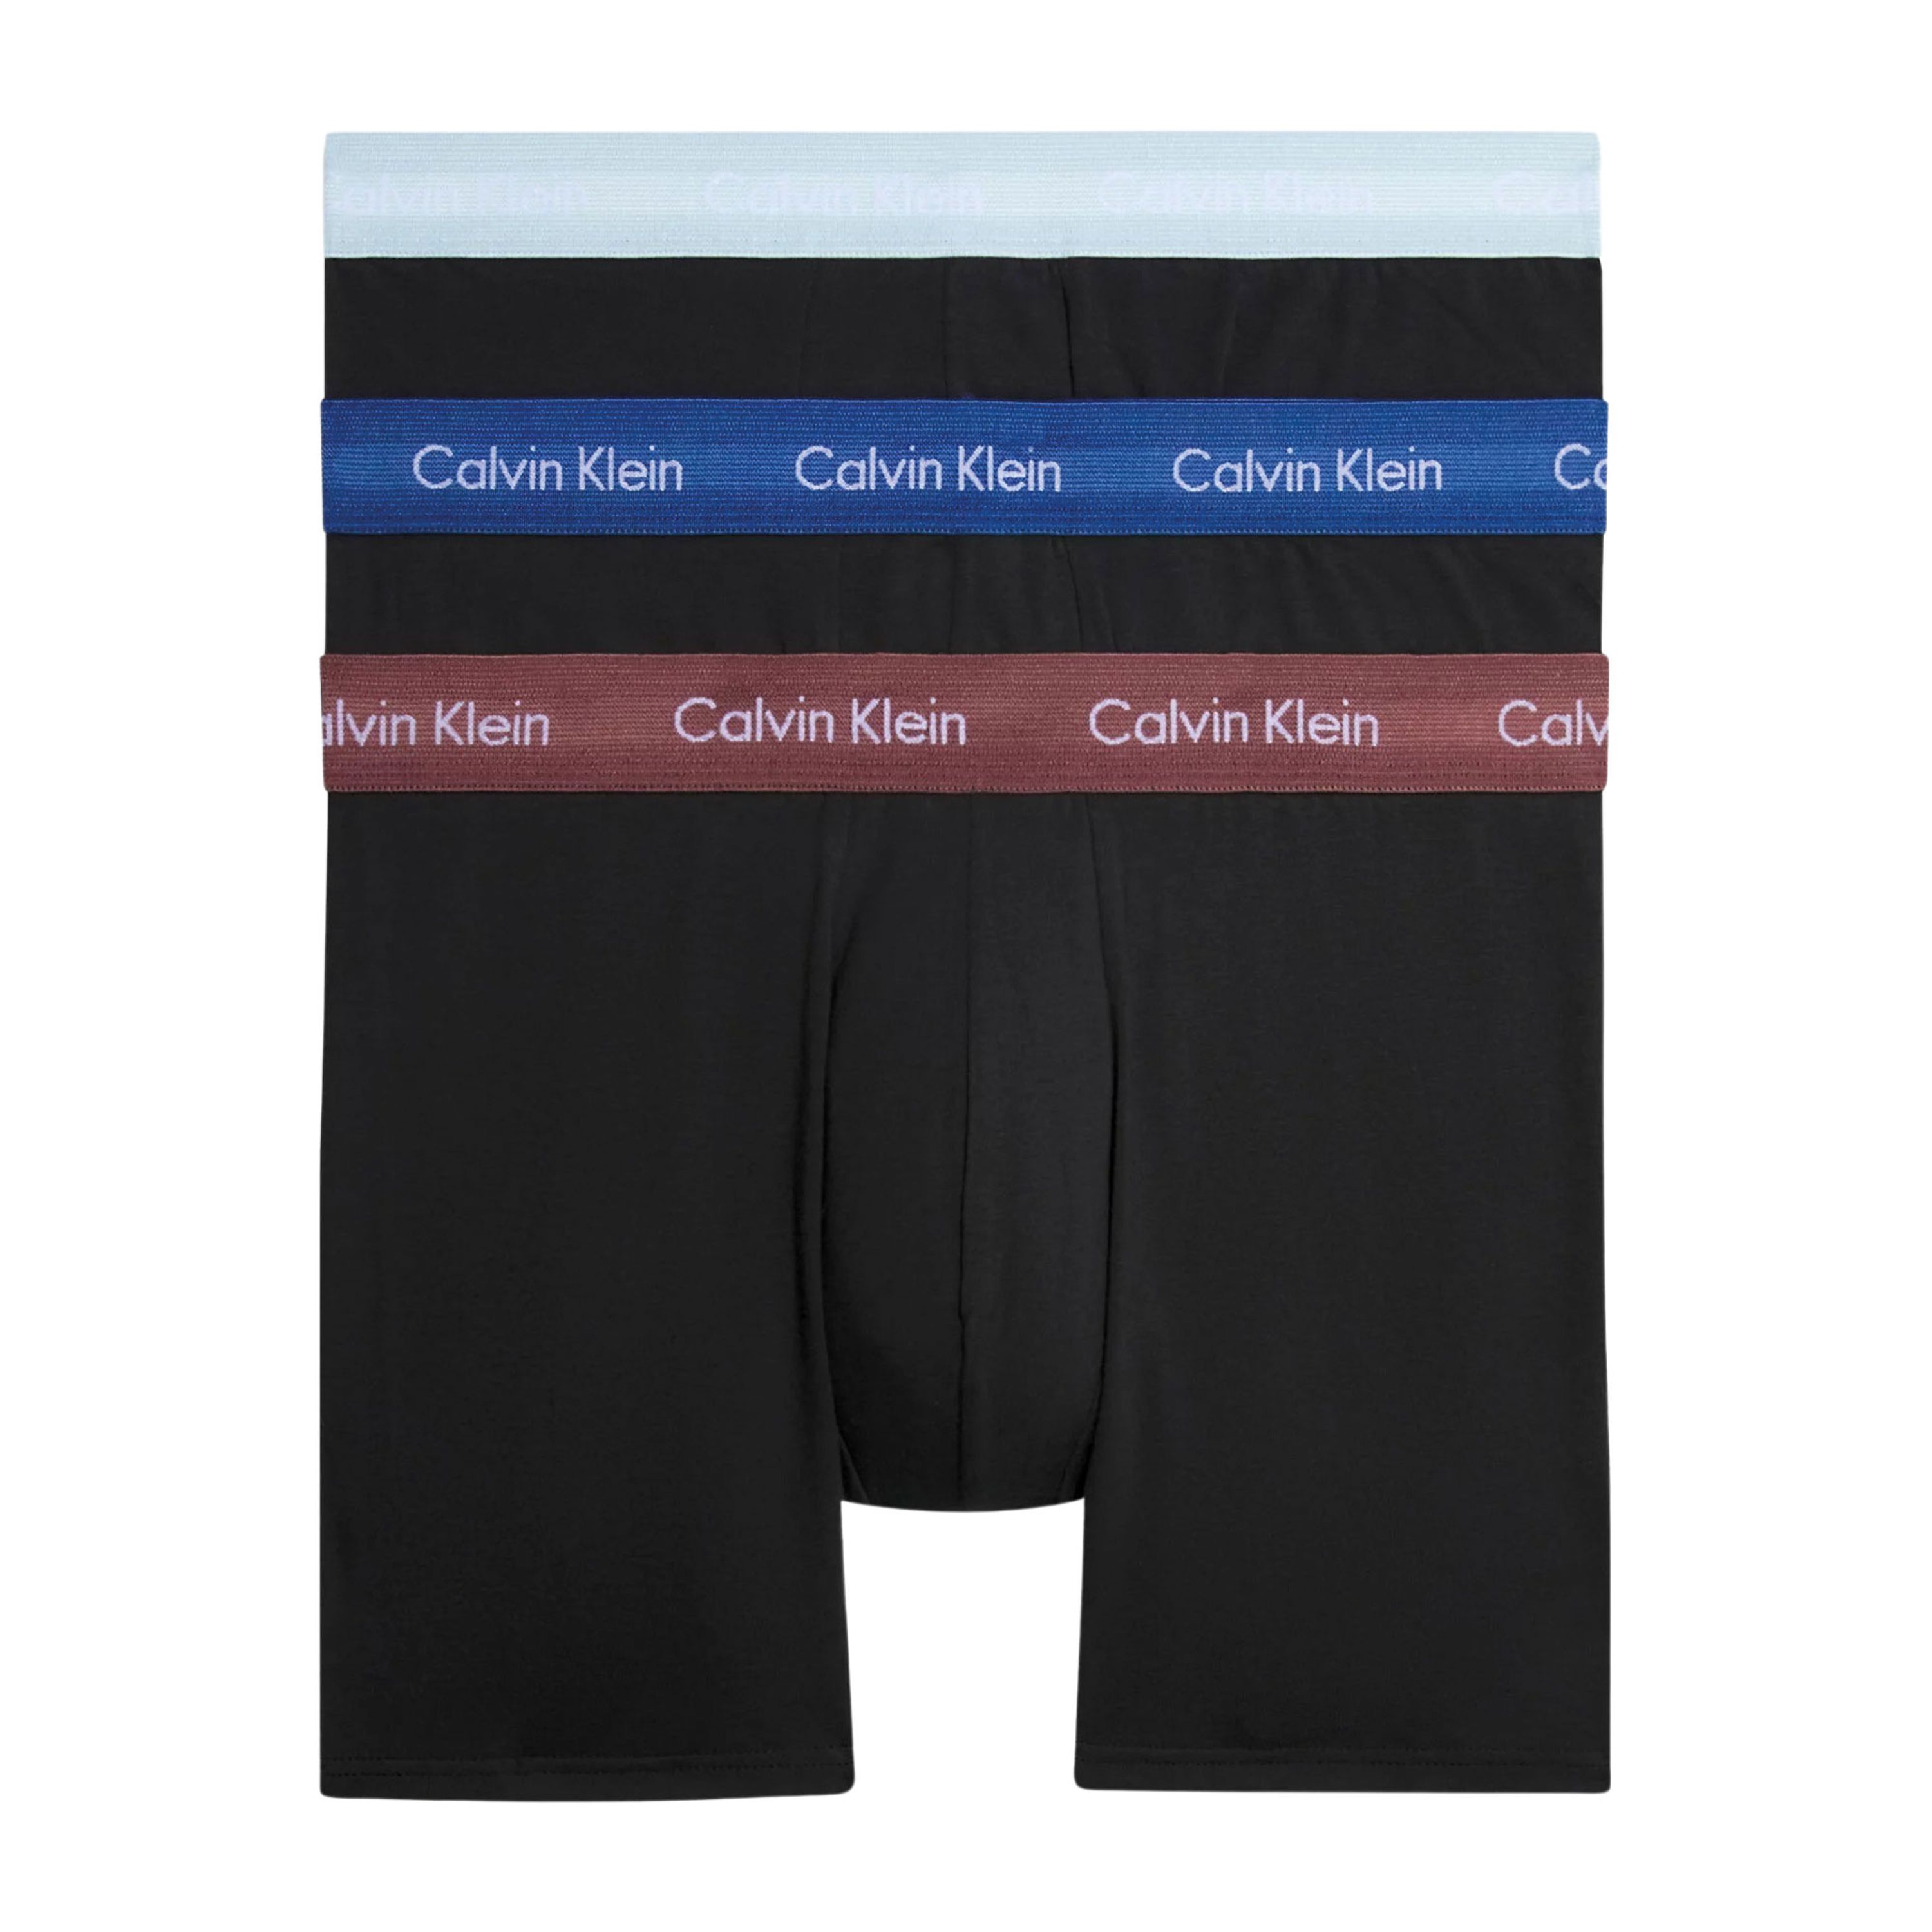 Calvin Klein Underwear Broek met elastische band met label in een set van 3 stuks